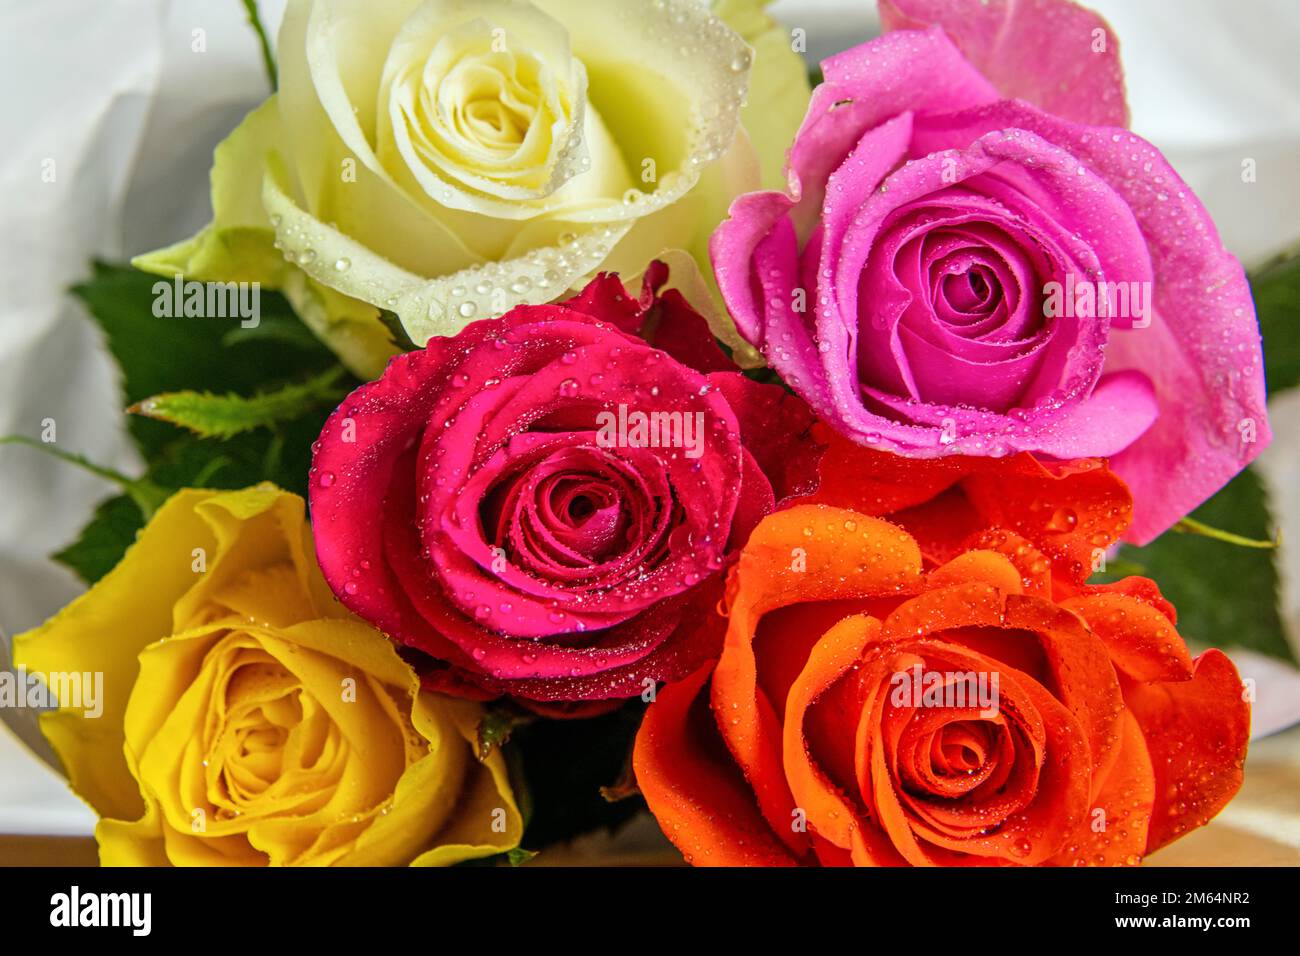 Rose teste di fiori in diversi colori con gocce di pioggia da offrire come regalo Foto Stock